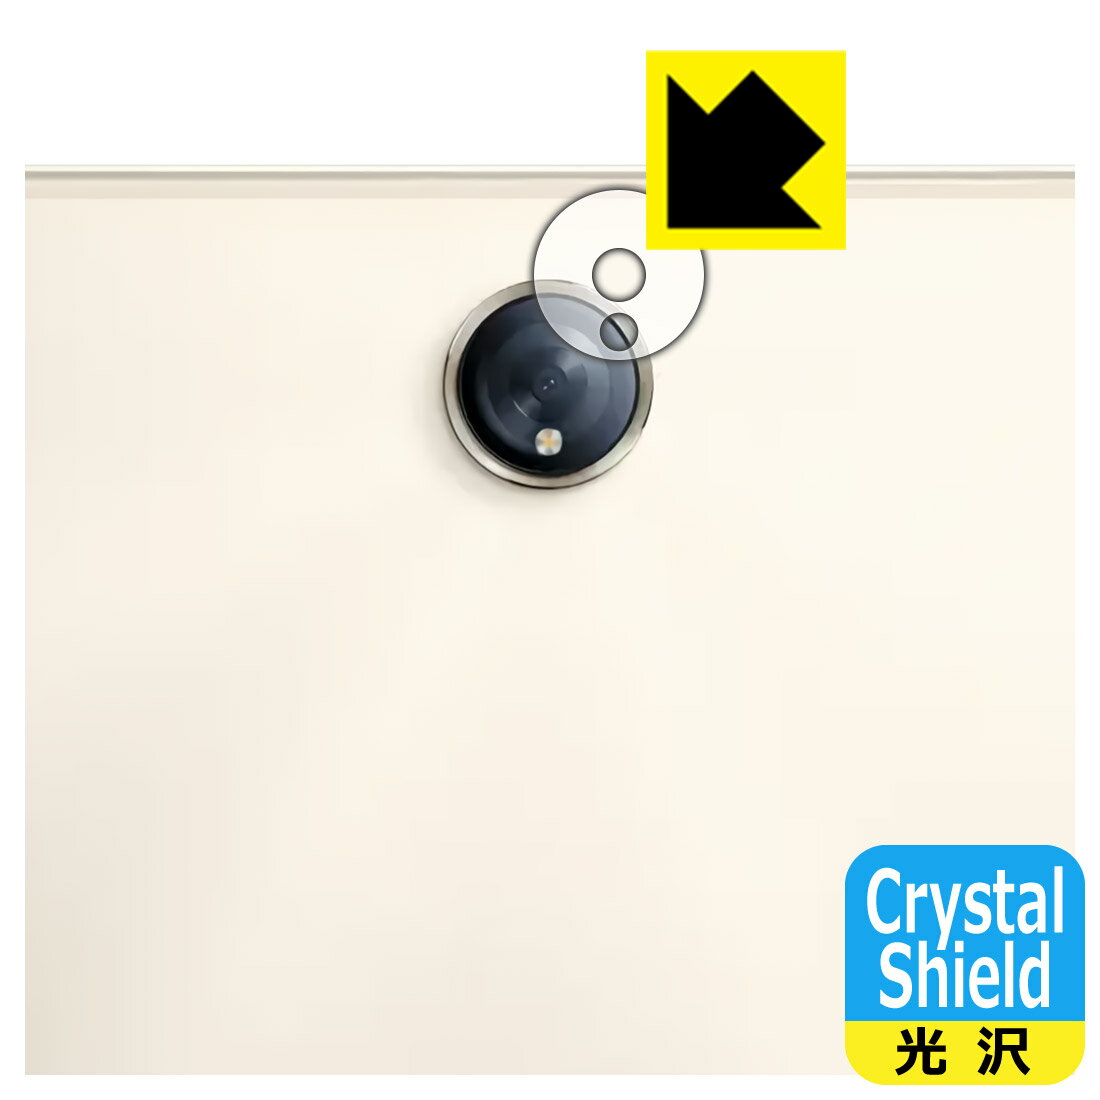 PDAH[ OPPO Pad 2Ή Crystal Shield ی tB [Yӕp] 3  { А